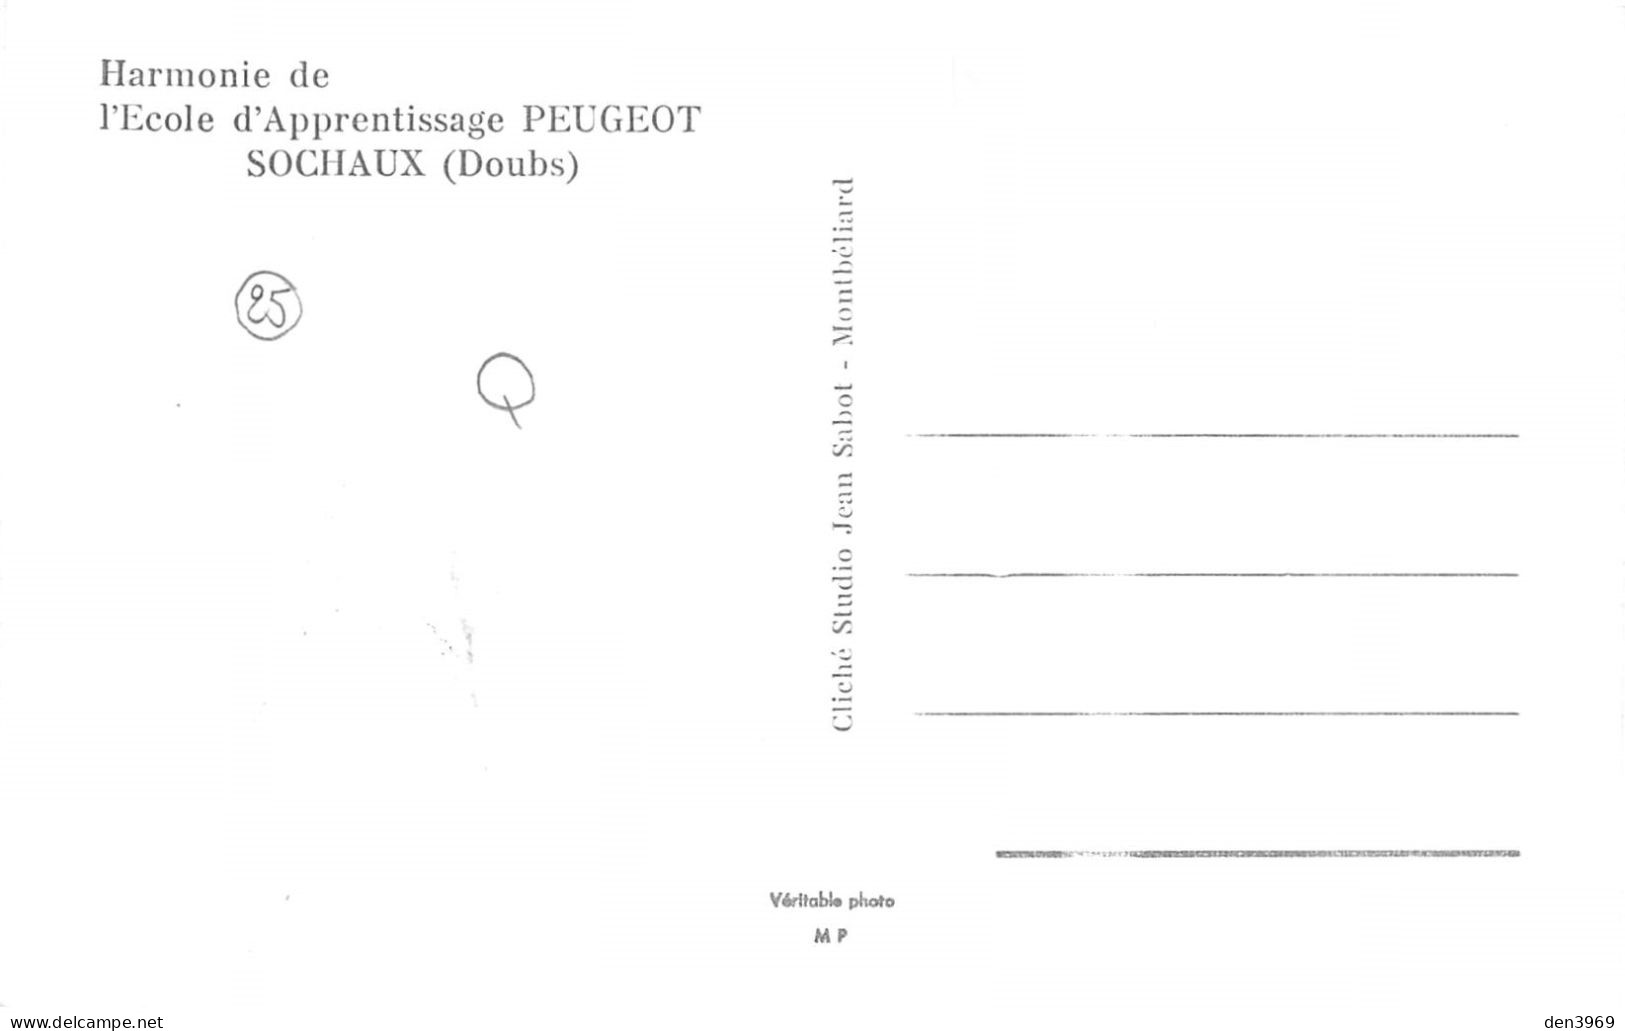 SOCHAUX (Doubs) - Harmonie De L'Ecole D'Apprentissage Peugeot - Fanfare - Cliché Studio Jean Sabot, Montbéliard - Sochaux